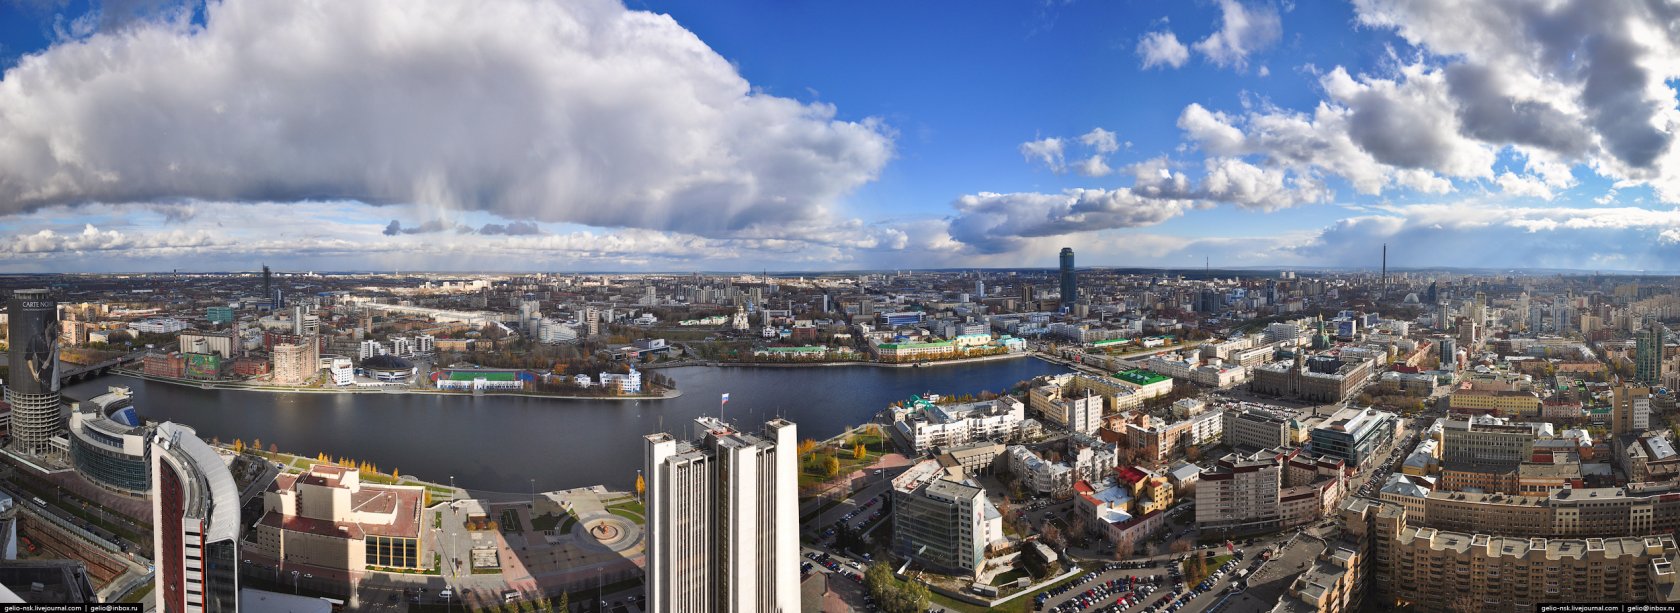 Екатеринбург панорама города